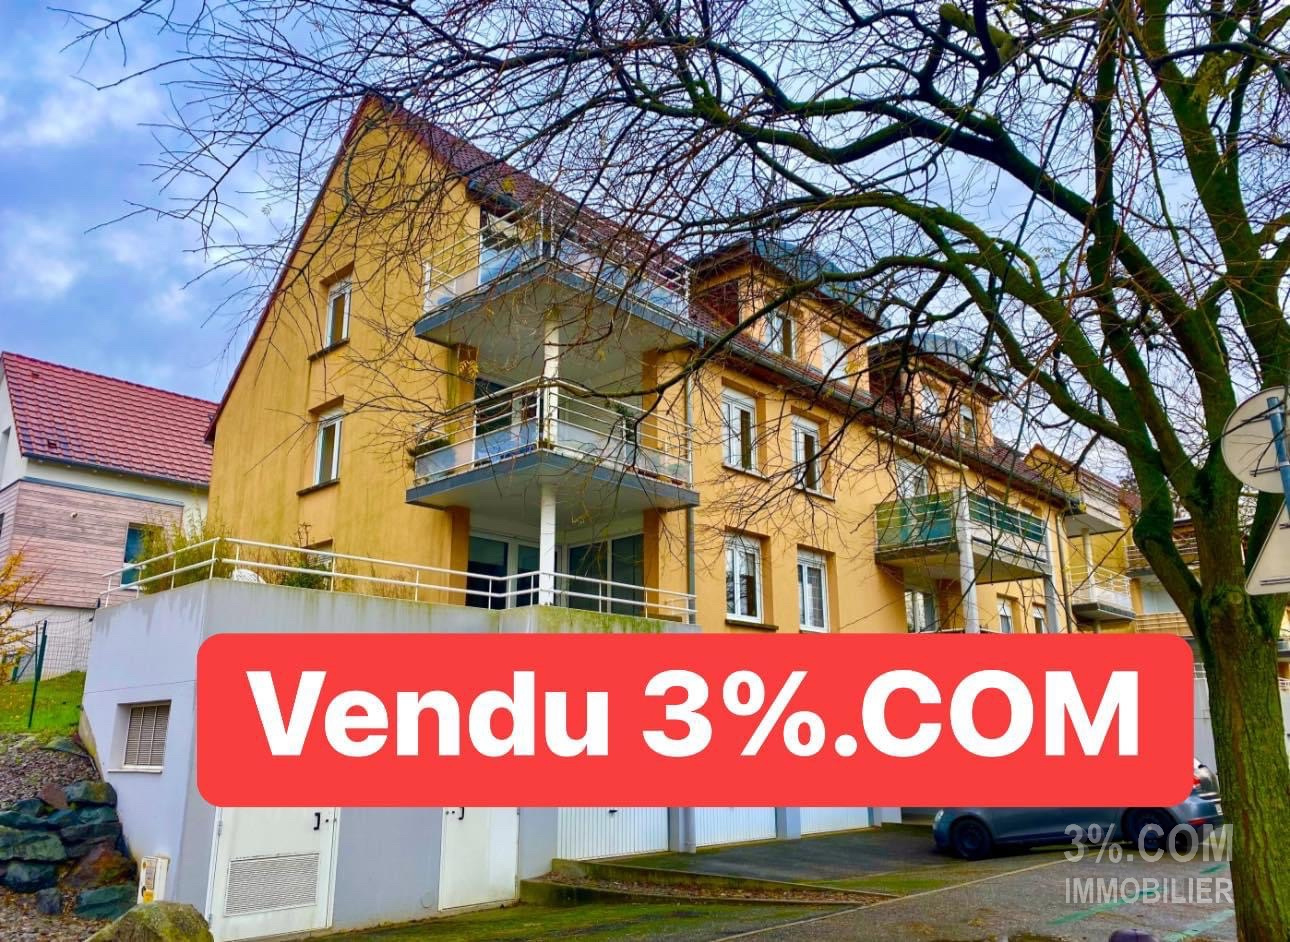 Vente Appartement 67m² 3 Pièces à Hochfelden (67270) - 3%.Com